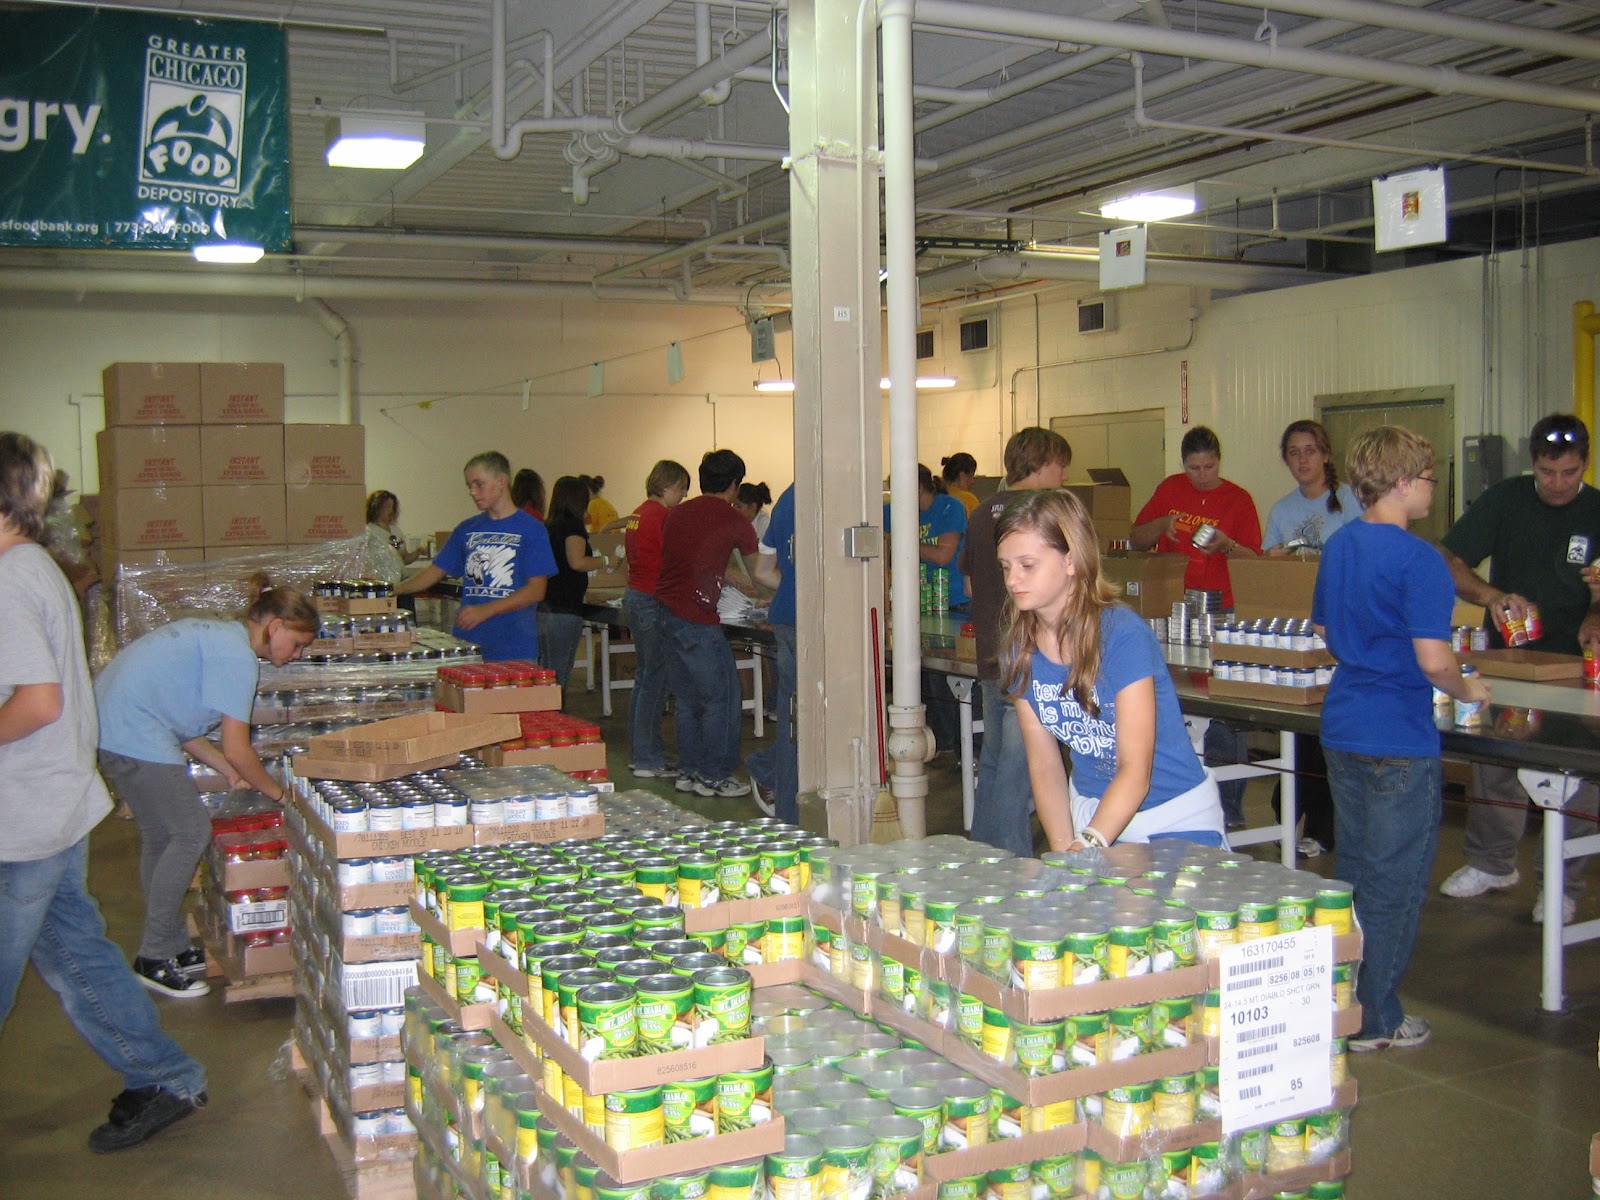 National Volunteer Week Greater Chicago Food Depository